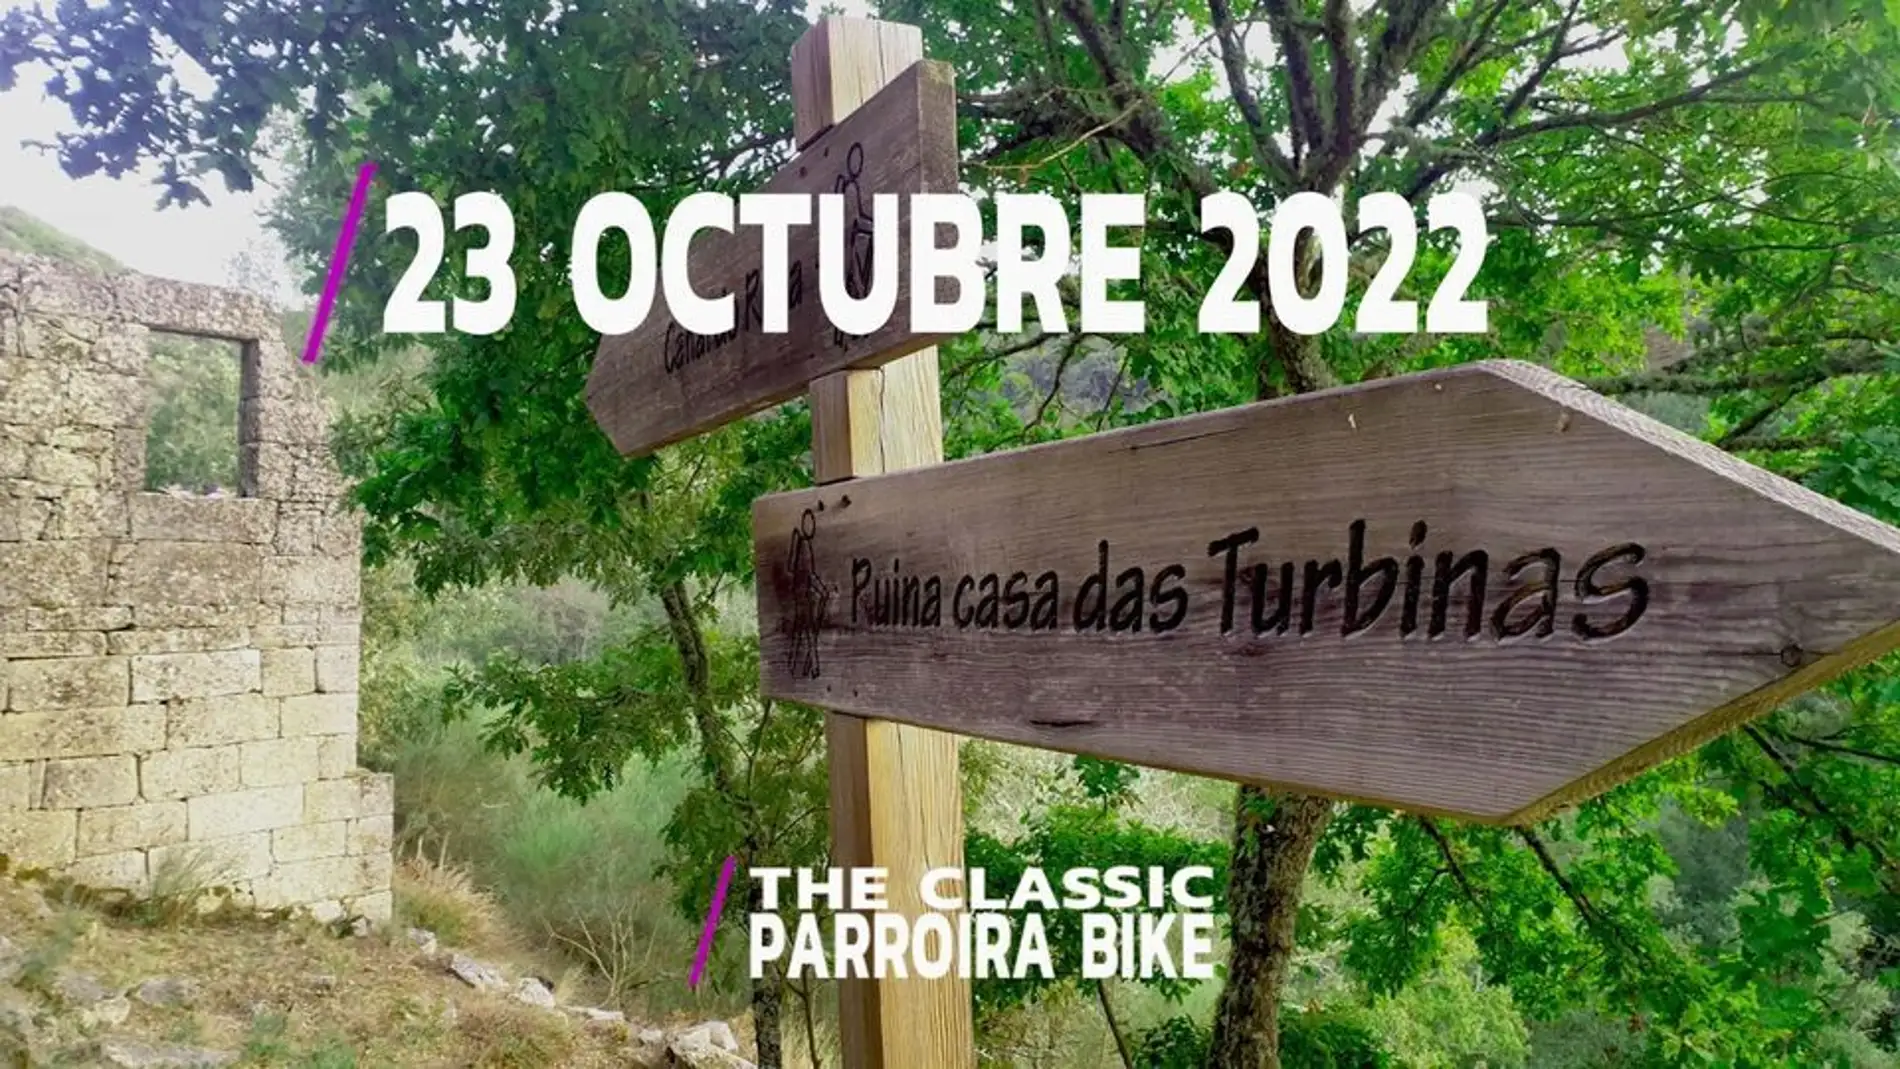 250 ciclistas participarán na Merca na décima edición da Parroira Bike